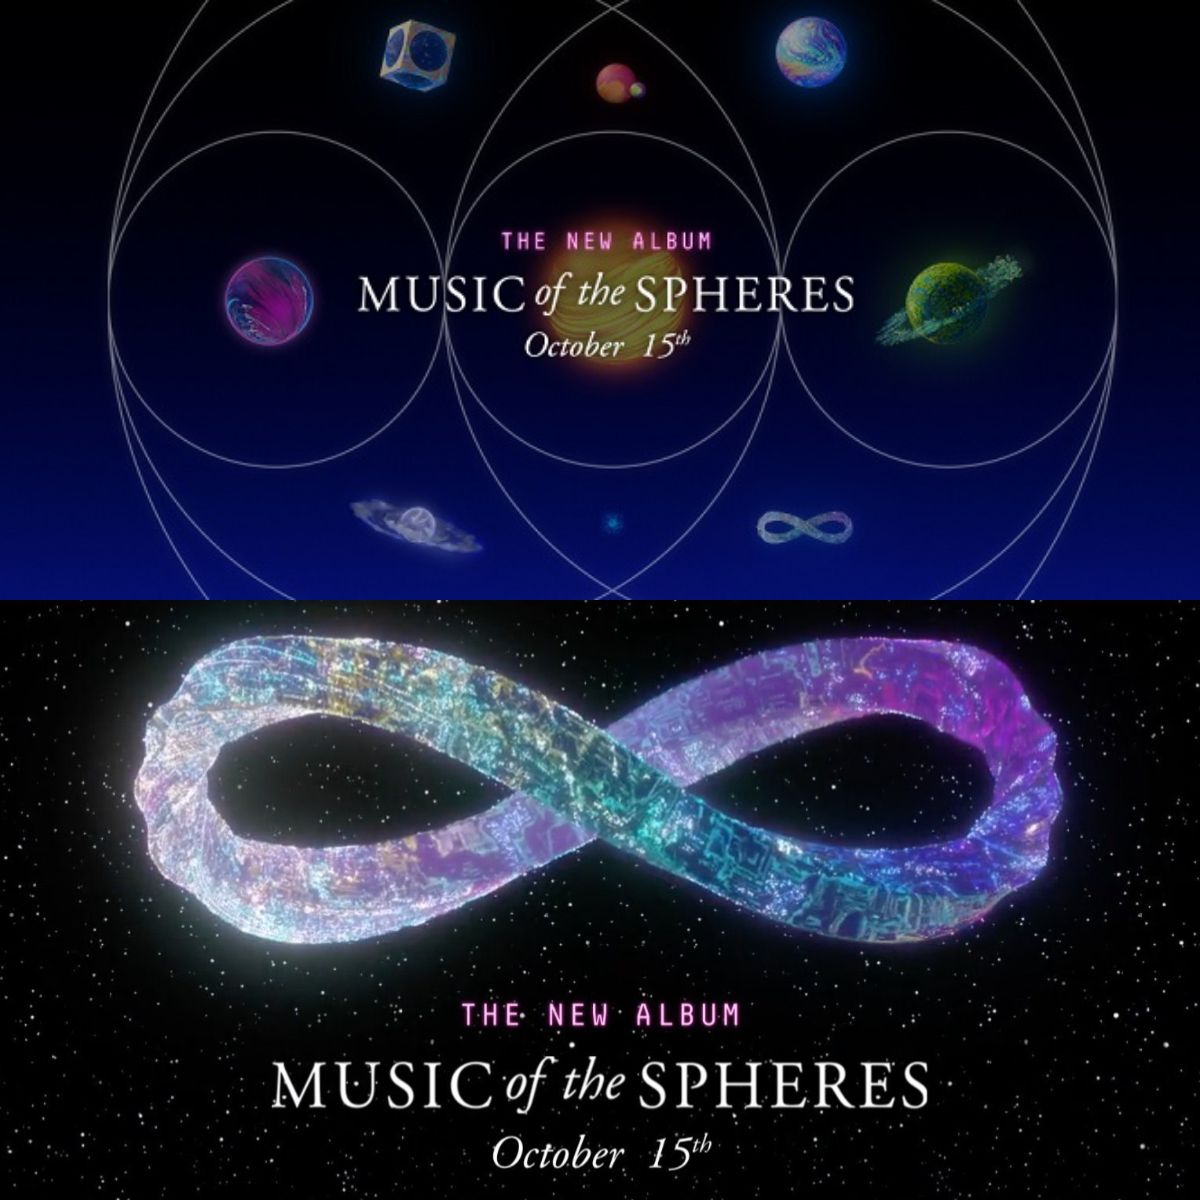 Foto konsep album Coldplay 'Music of the Spheres' (atas) dan Simbol infinity yang dipakai Coldplay 'Music of the Spheres' (bawah).